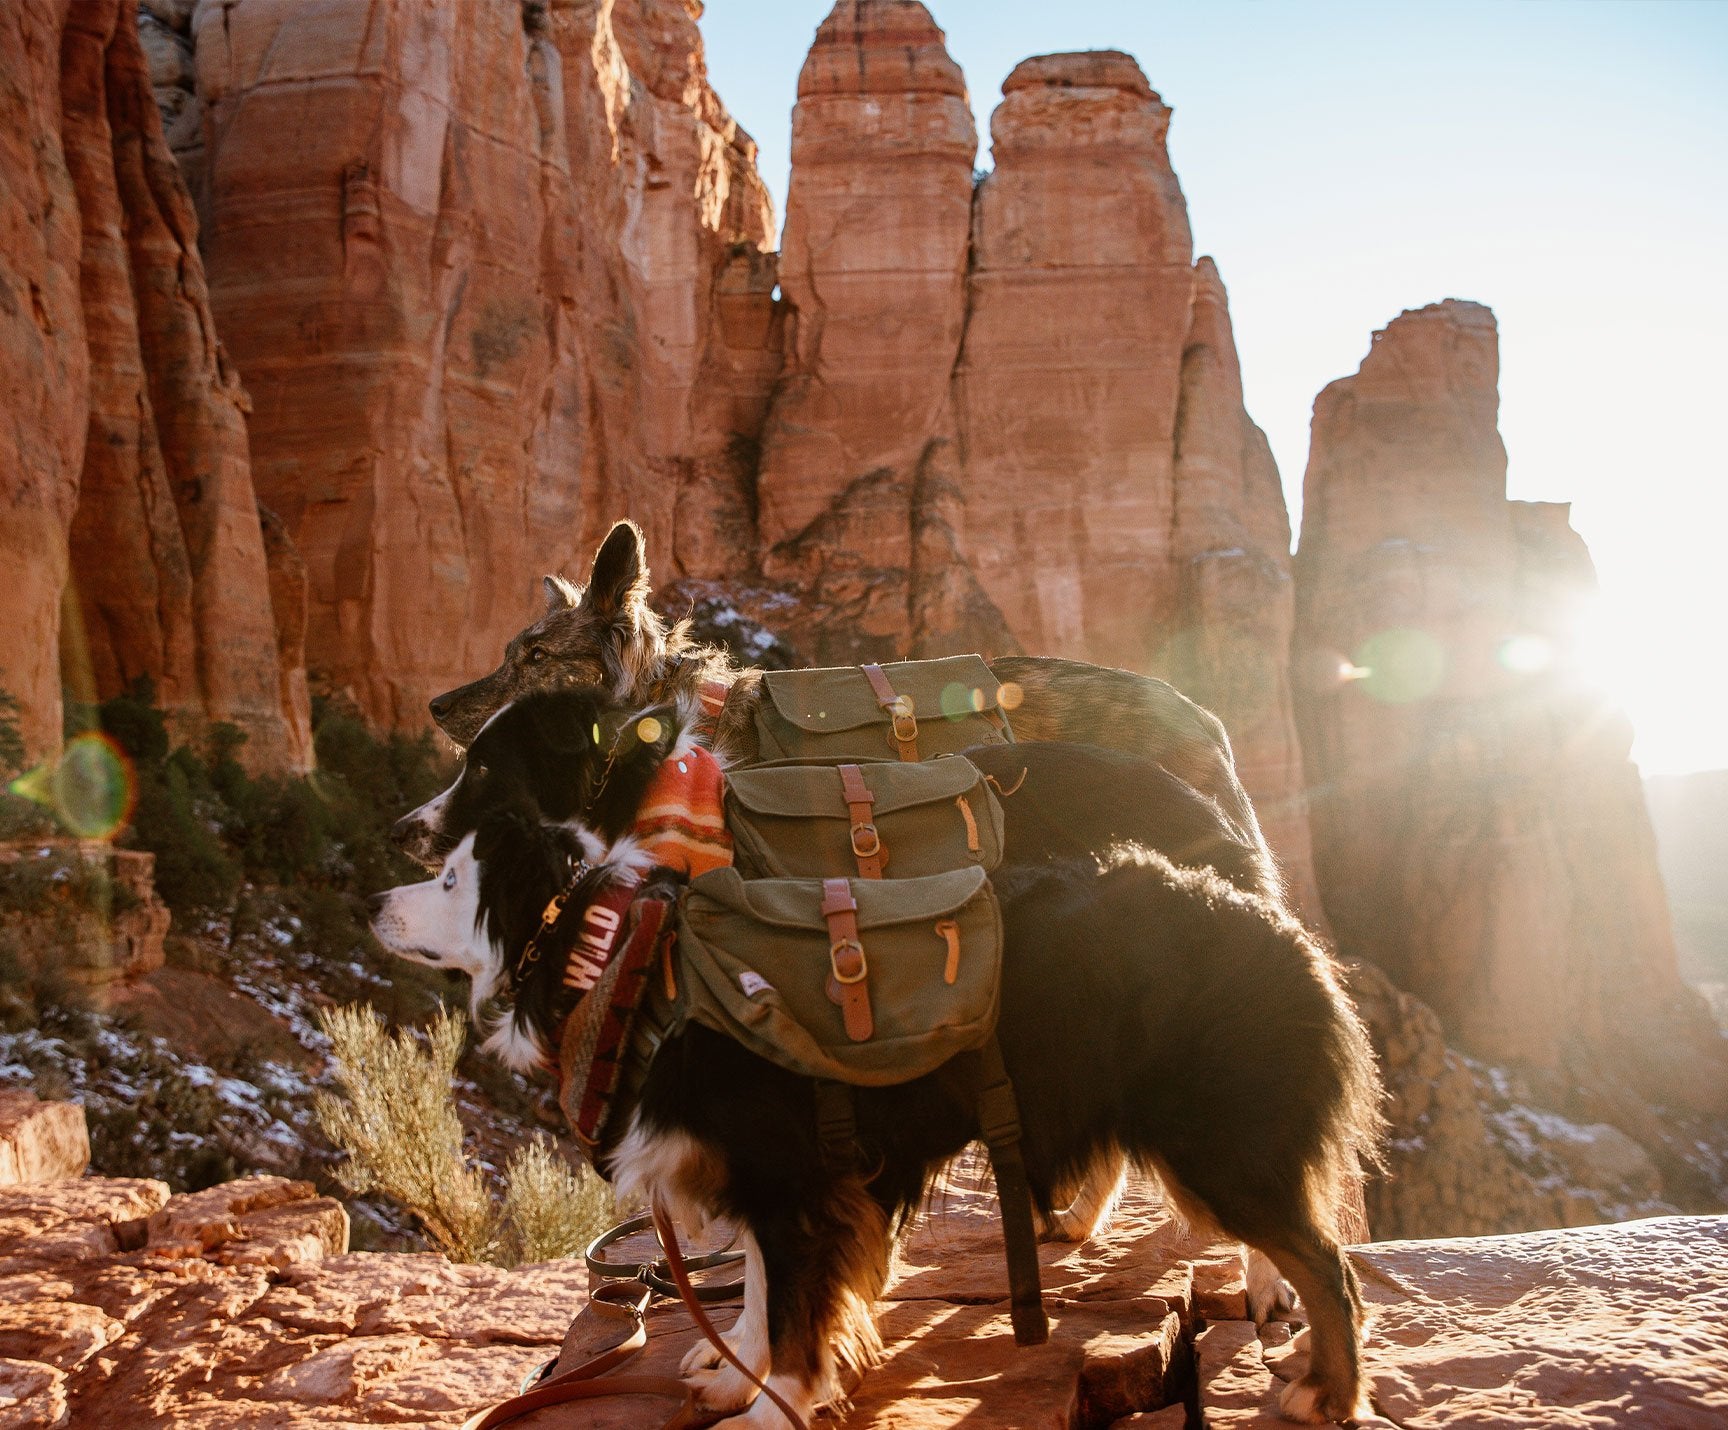 dog hiking backpack